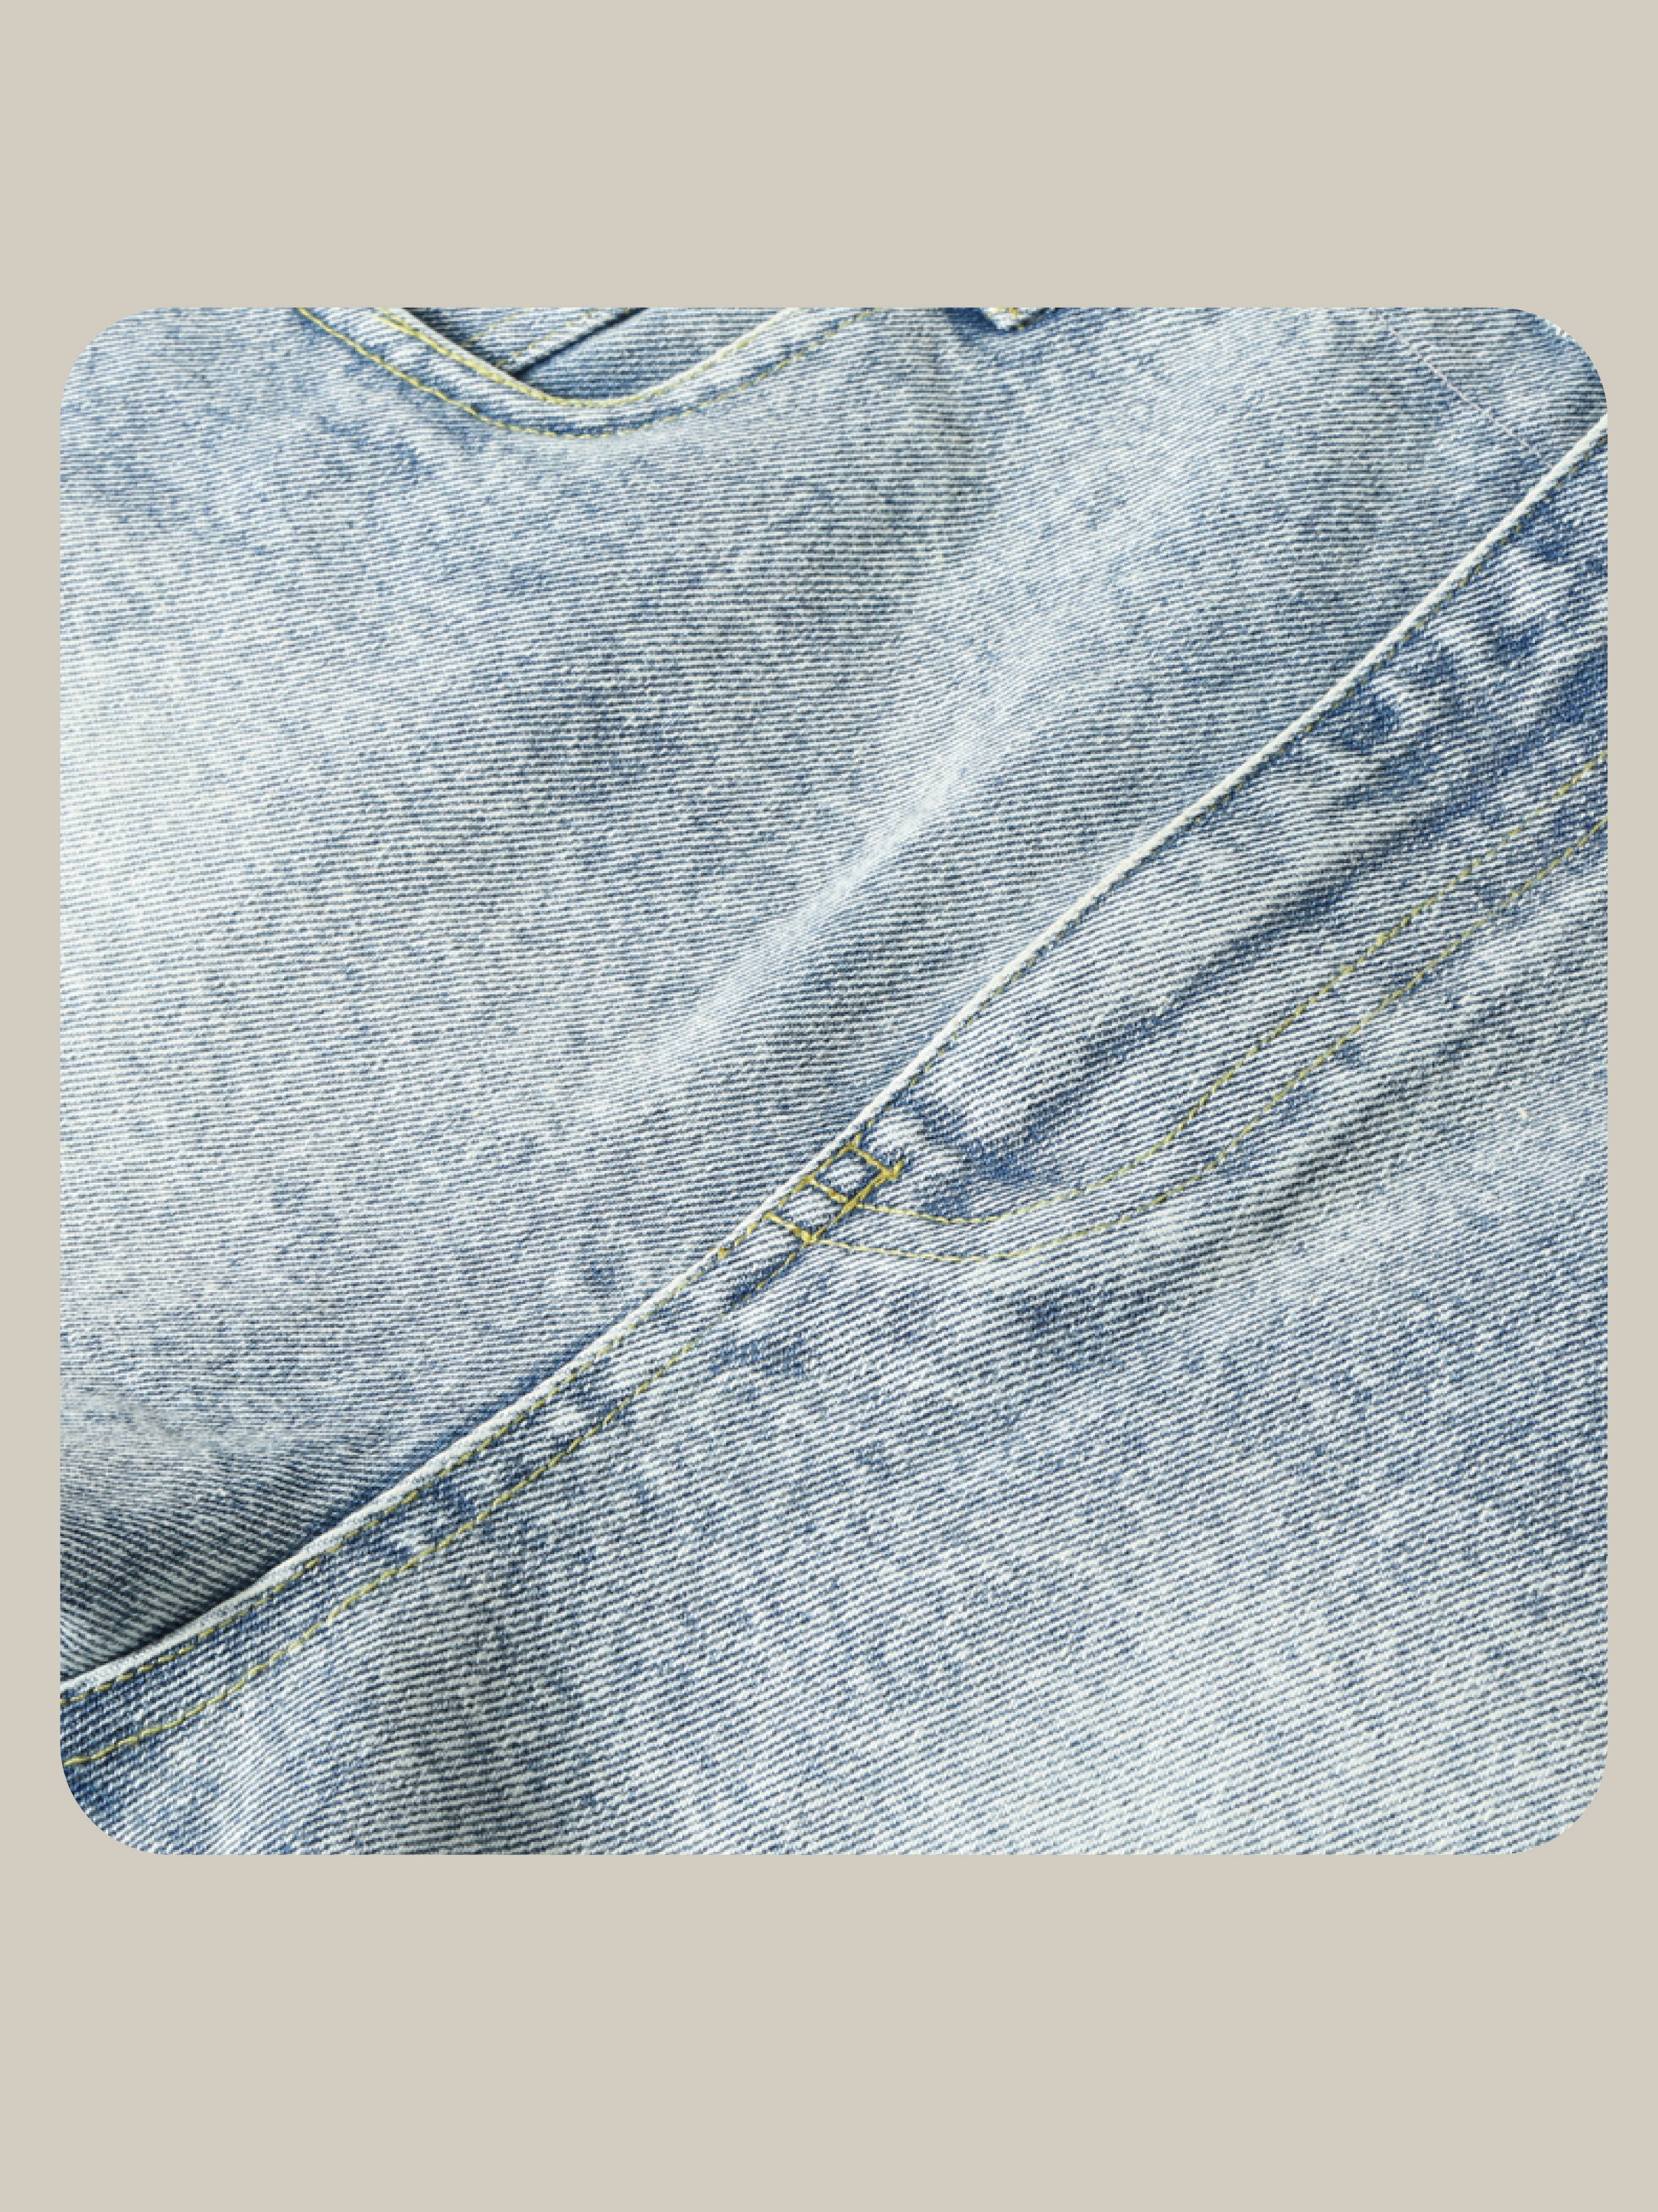 Detail Lace Denim Short Pants/ディテールレースデニムショートパンツ